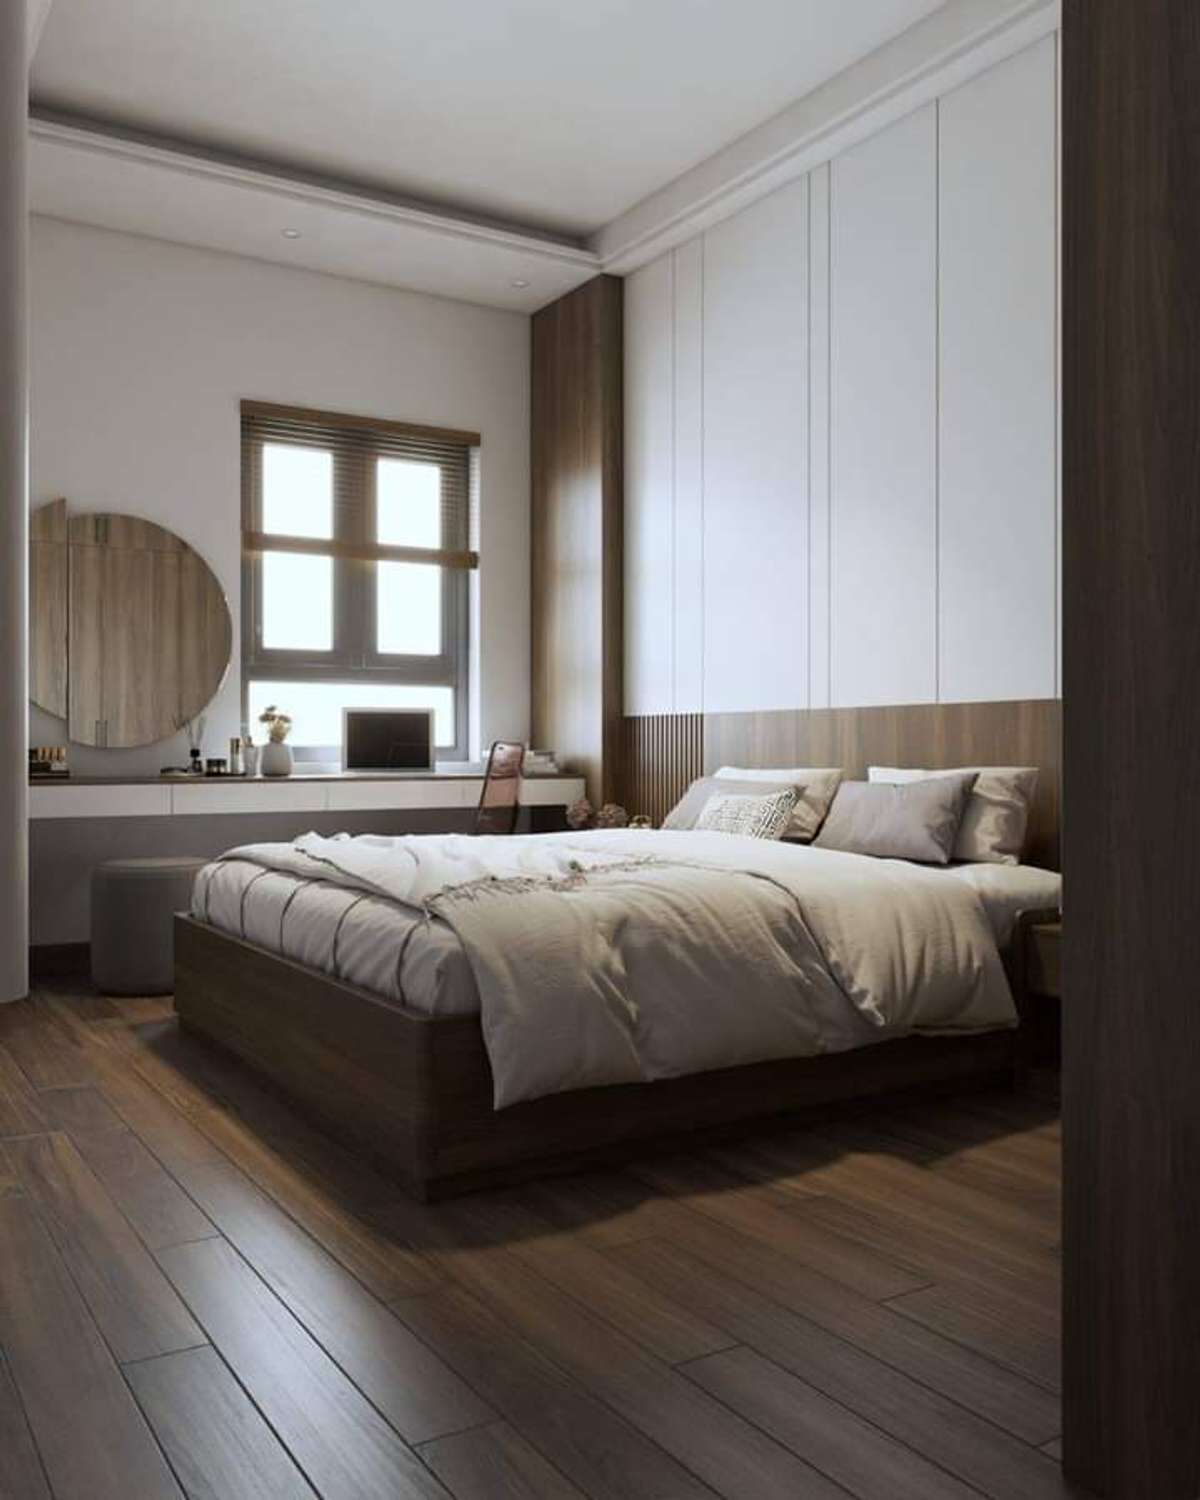 Furniture, Lighting, Storage, Bedroom Designs by Architect aaaaaaaaaa n, Jaipur | Kolo